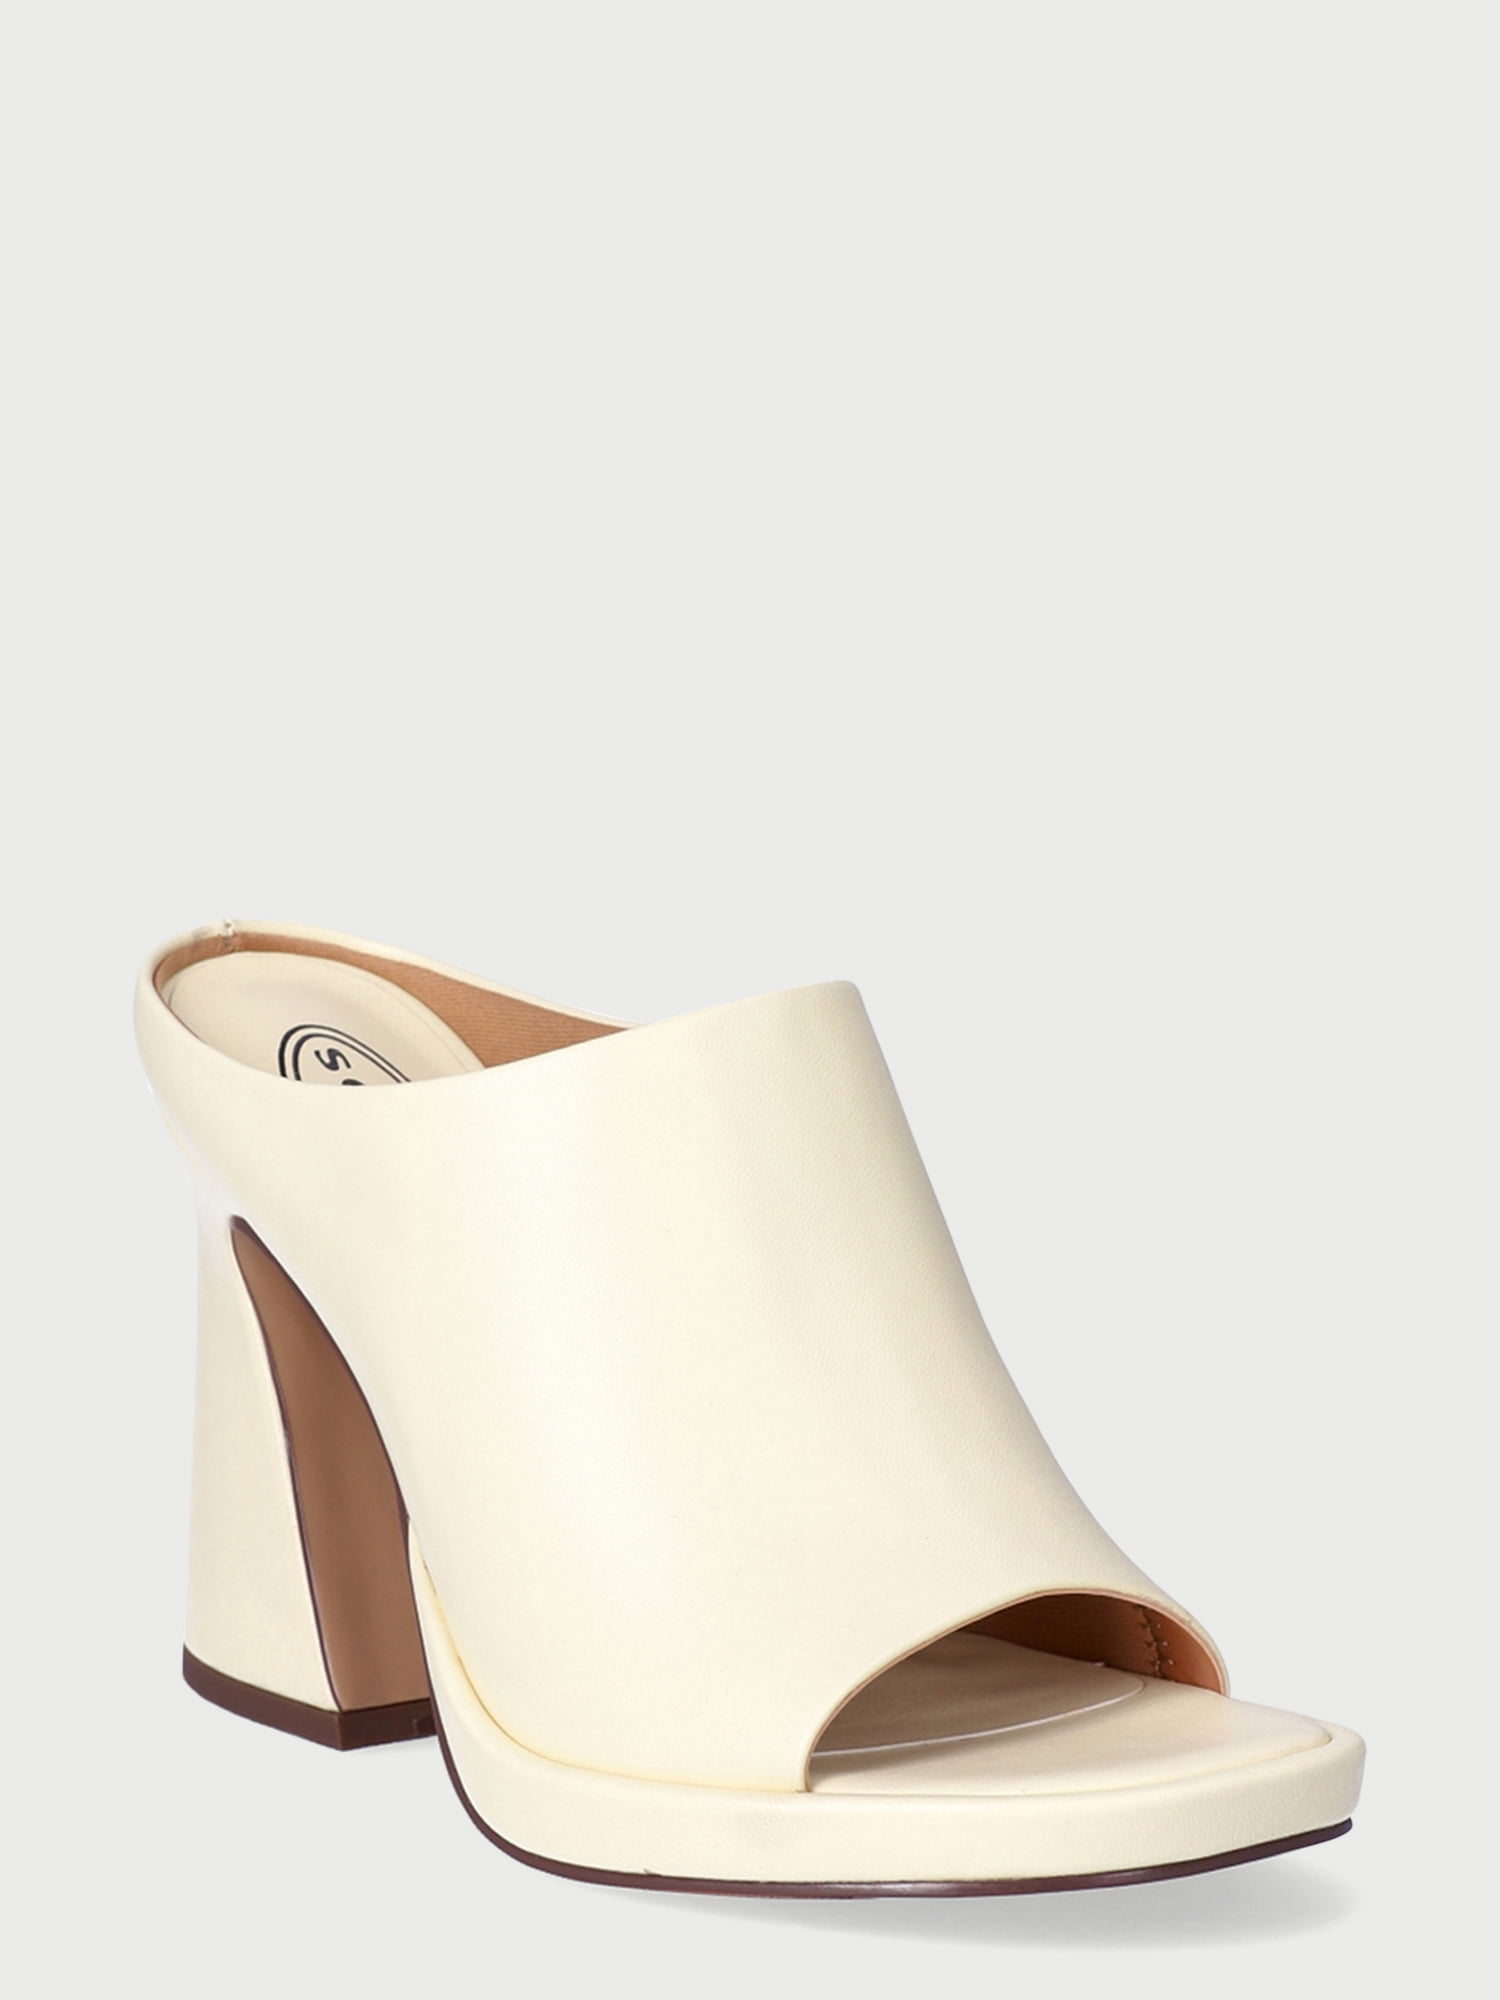 Shop Scoop Women's Flared Heel Mule Sandals - Great Prices Await ...